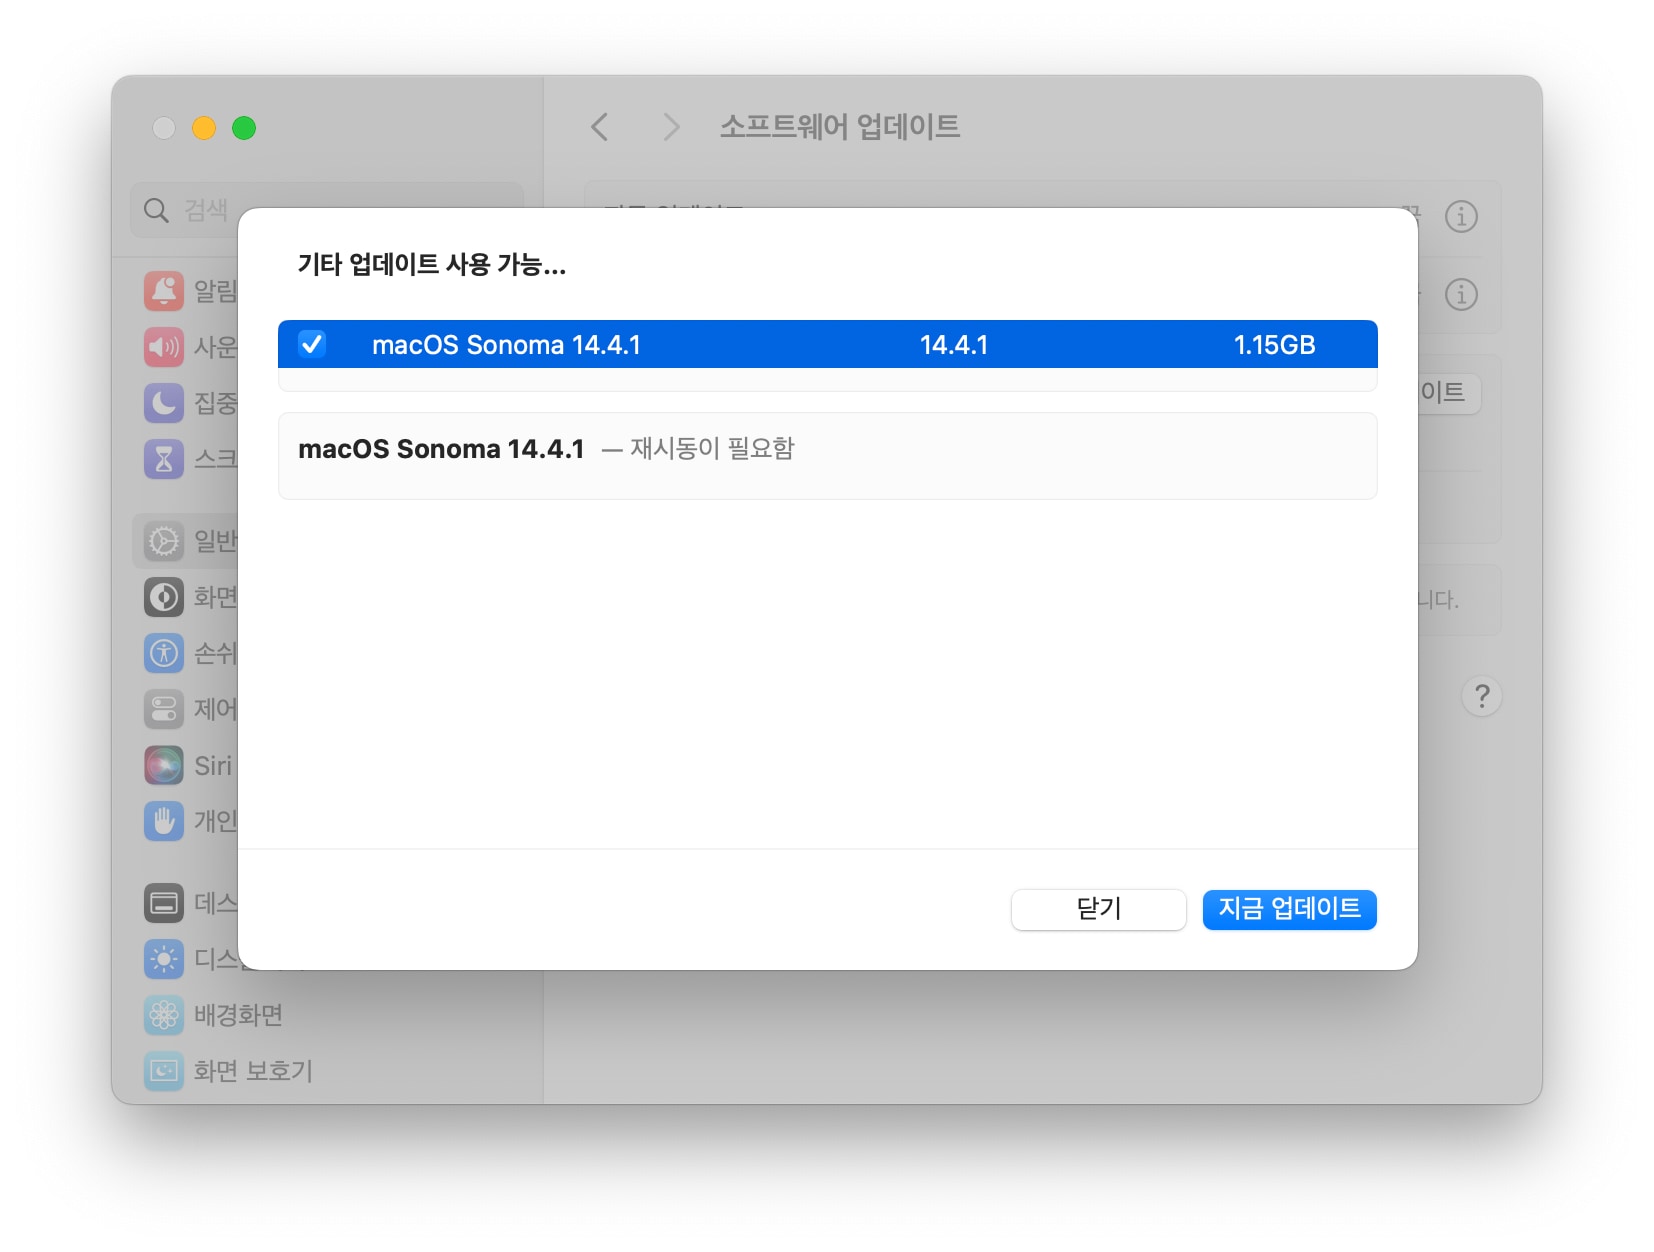 맥OS 소노마 14.4.1 업데이트 파일 크기